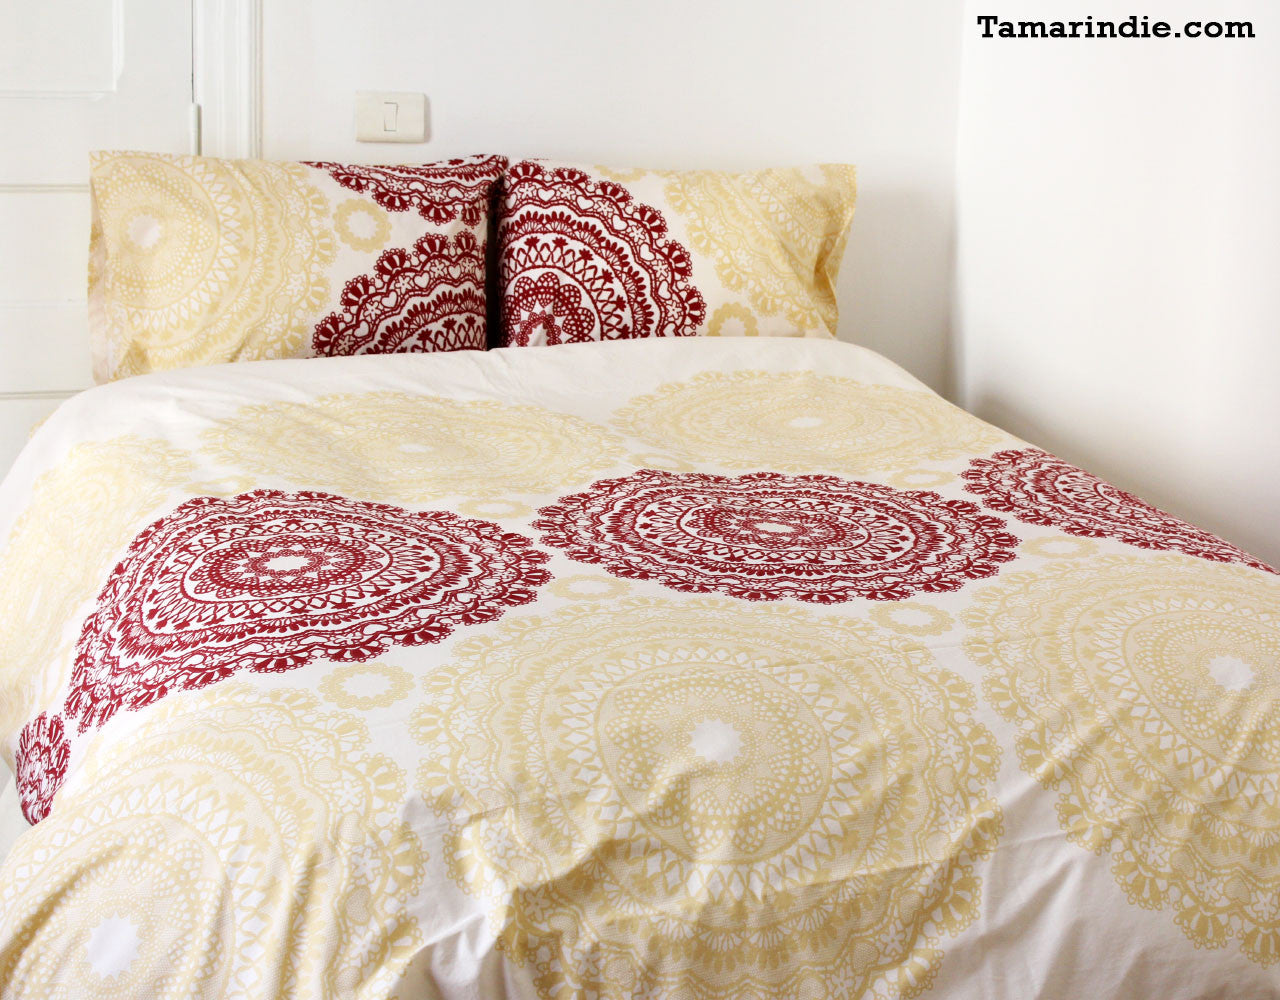 Pradesh Cotton Duvet Bed Set|طقم مفارش براديش القطنية مع لحاف